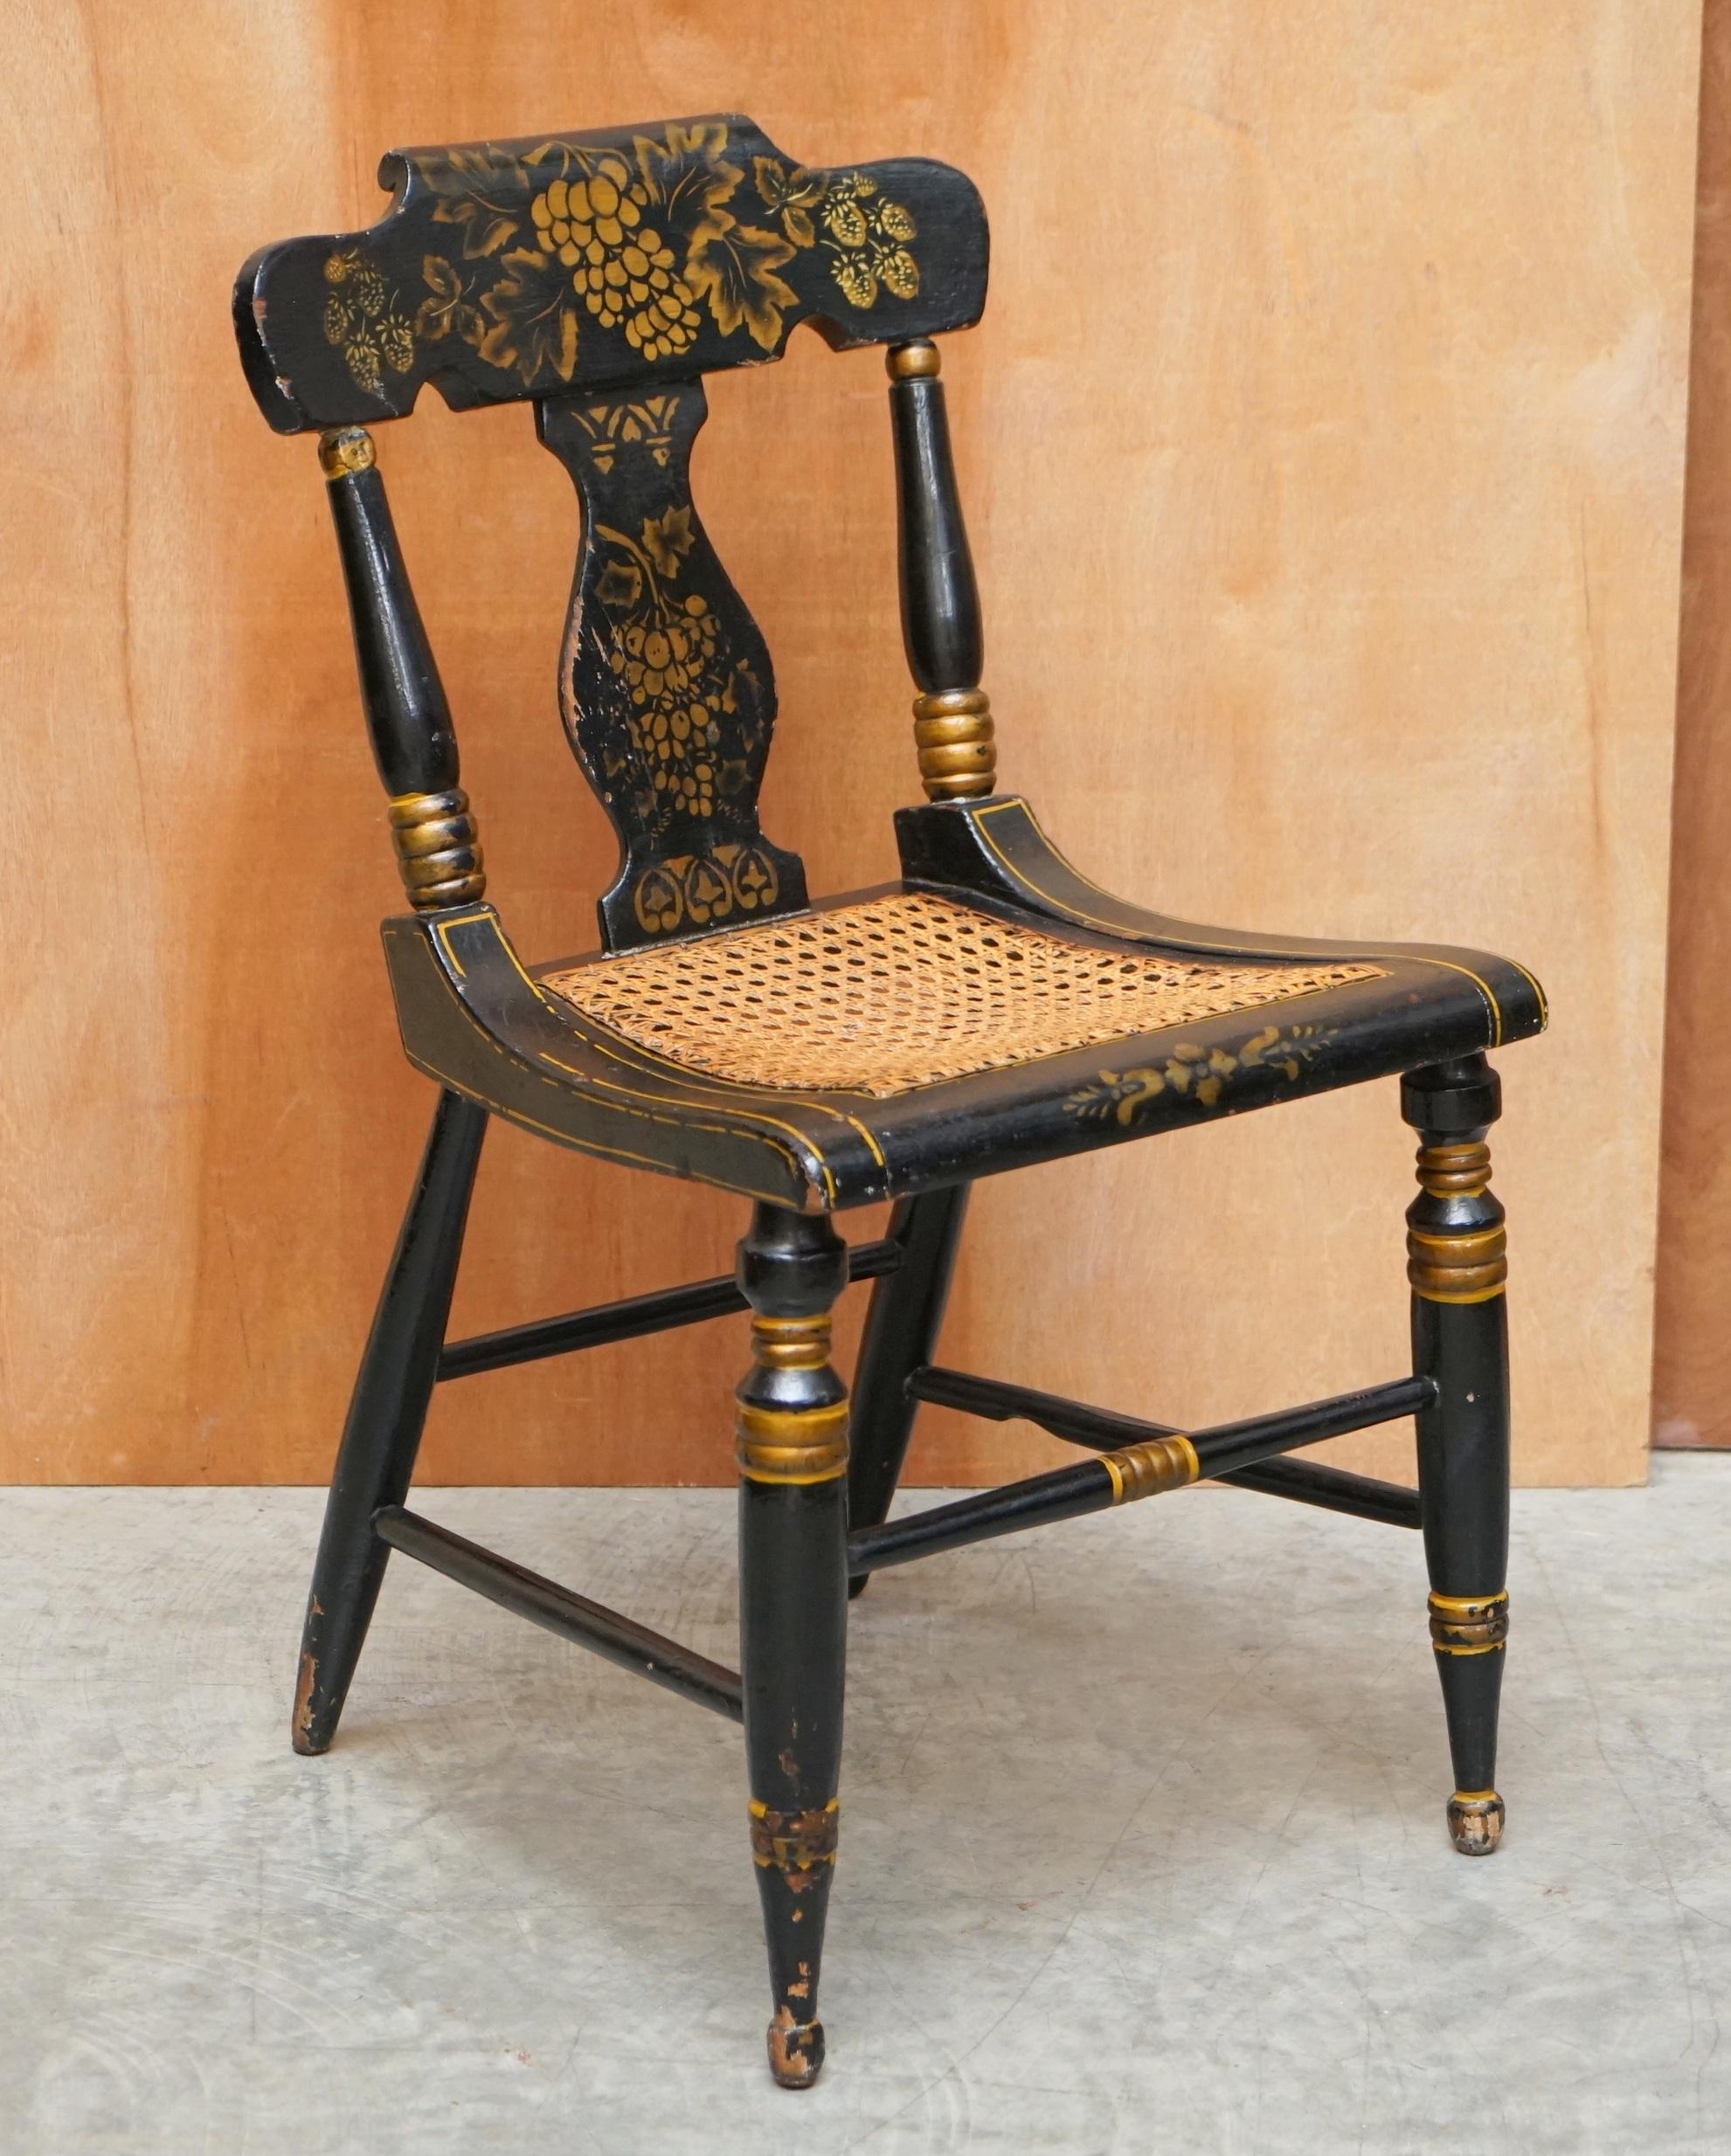 Wir freuen uns sehr, dieses atemberaubende Paar originaler, um 1825 ebonisierter und vergoldeter, handbemalter Baltimore-Seitenstühle anbieten zu können

Ein sehr sammelwürdiges und gut gemachtes Paar Beistellstühle. Wenn Sie sich dieses Angebot